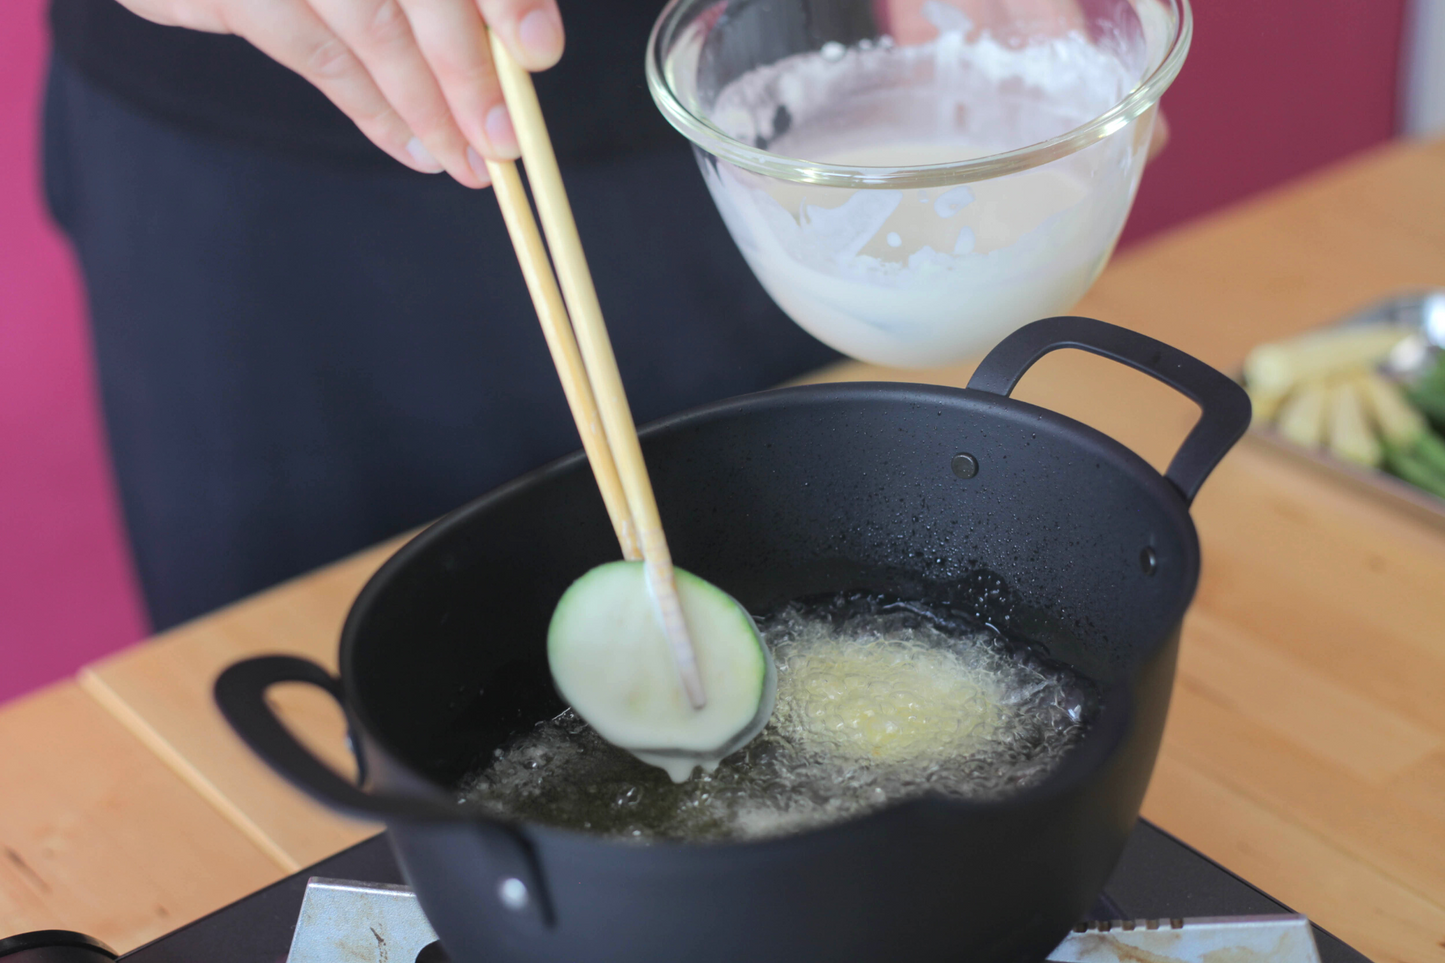 Glutenvrije rijstmeel tempura mix